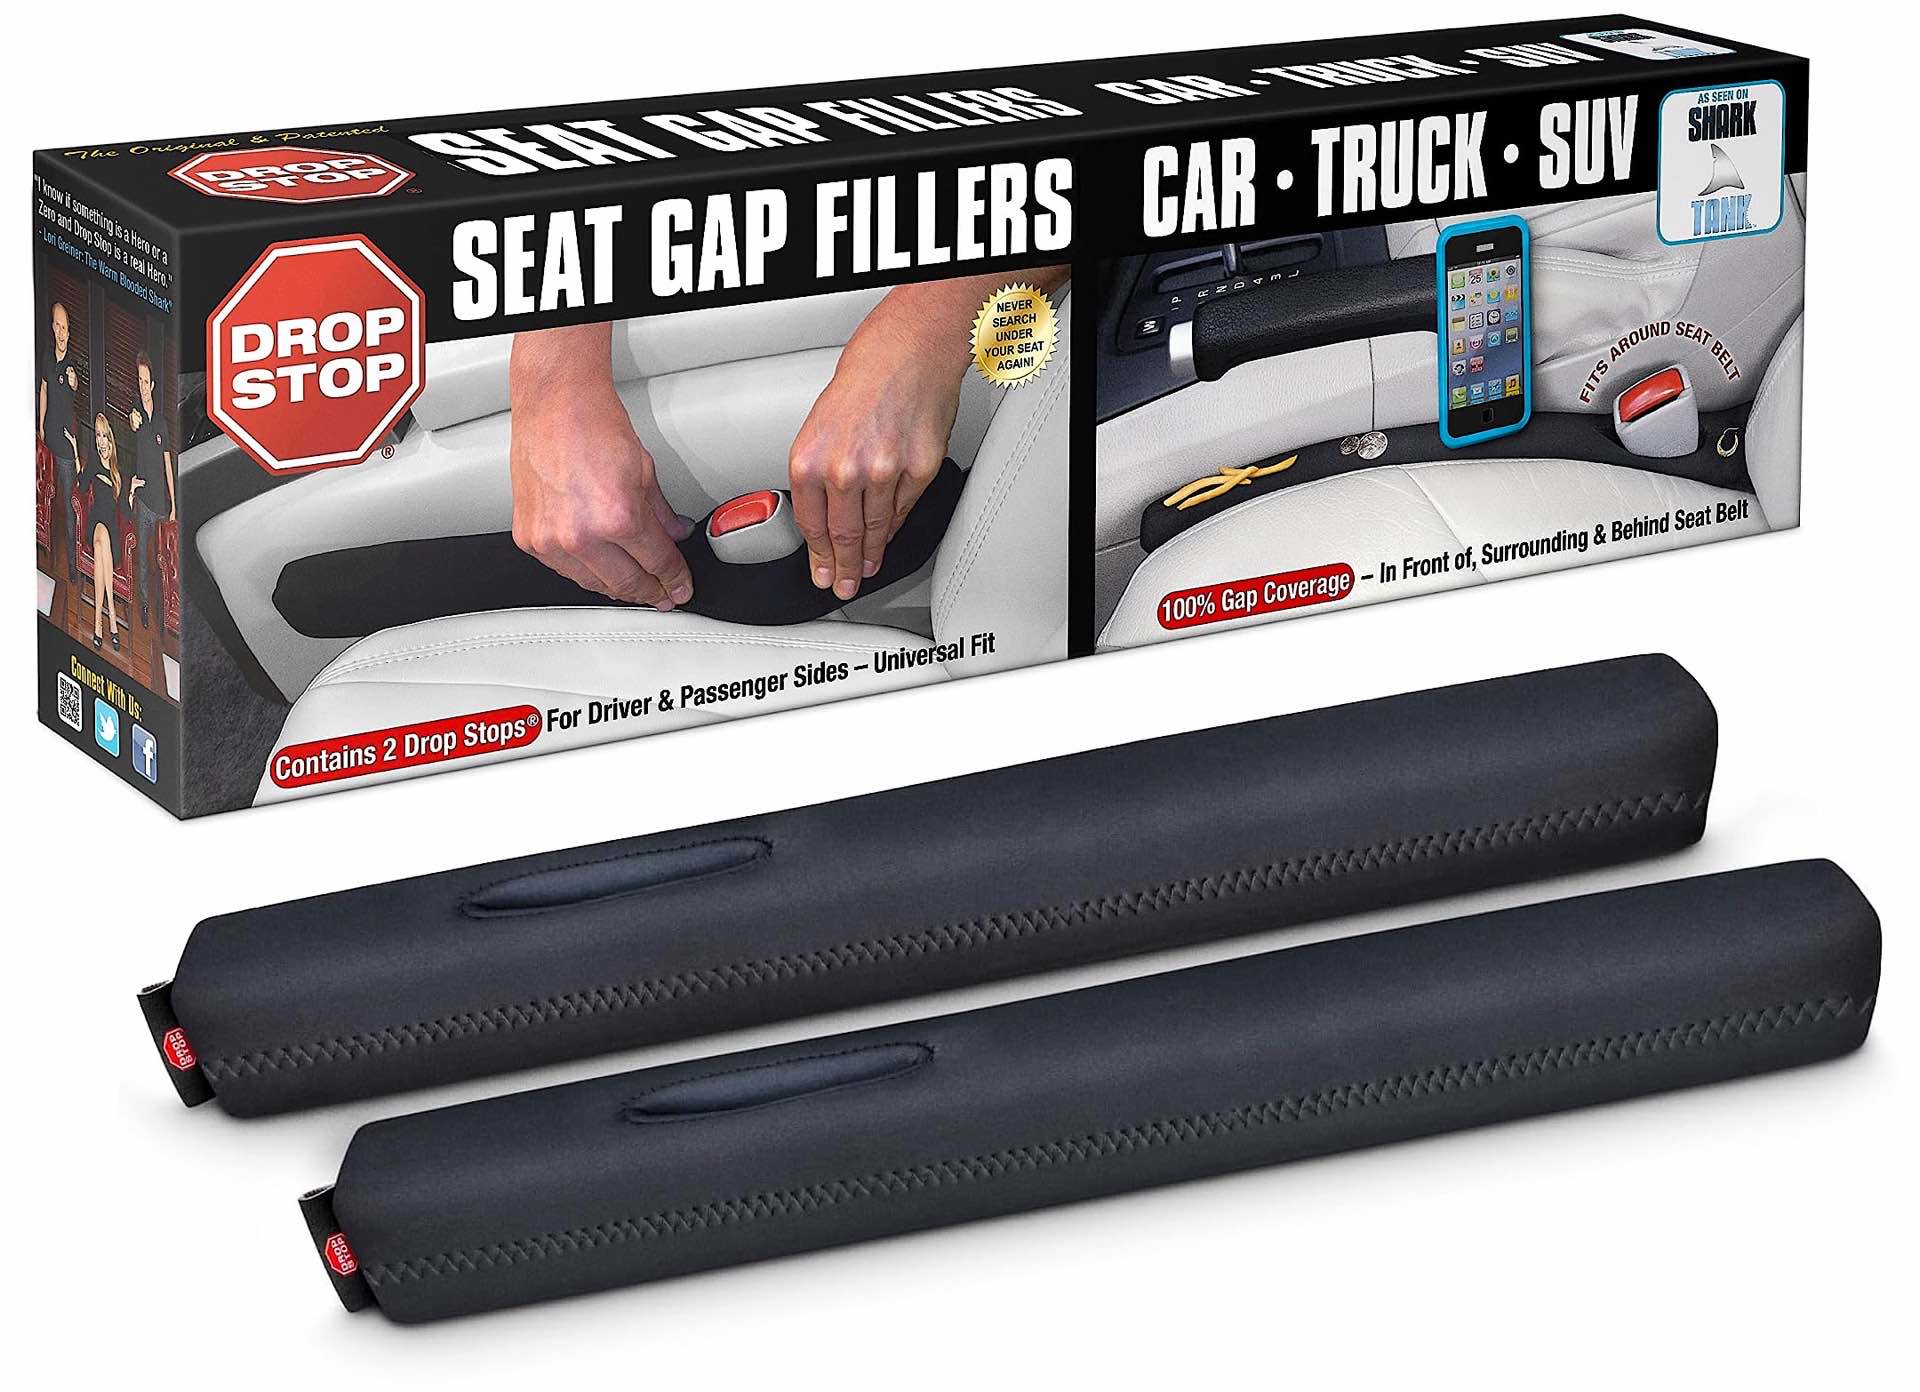 Drop Stop” Car Seat Gap Filler — Tools and Toys